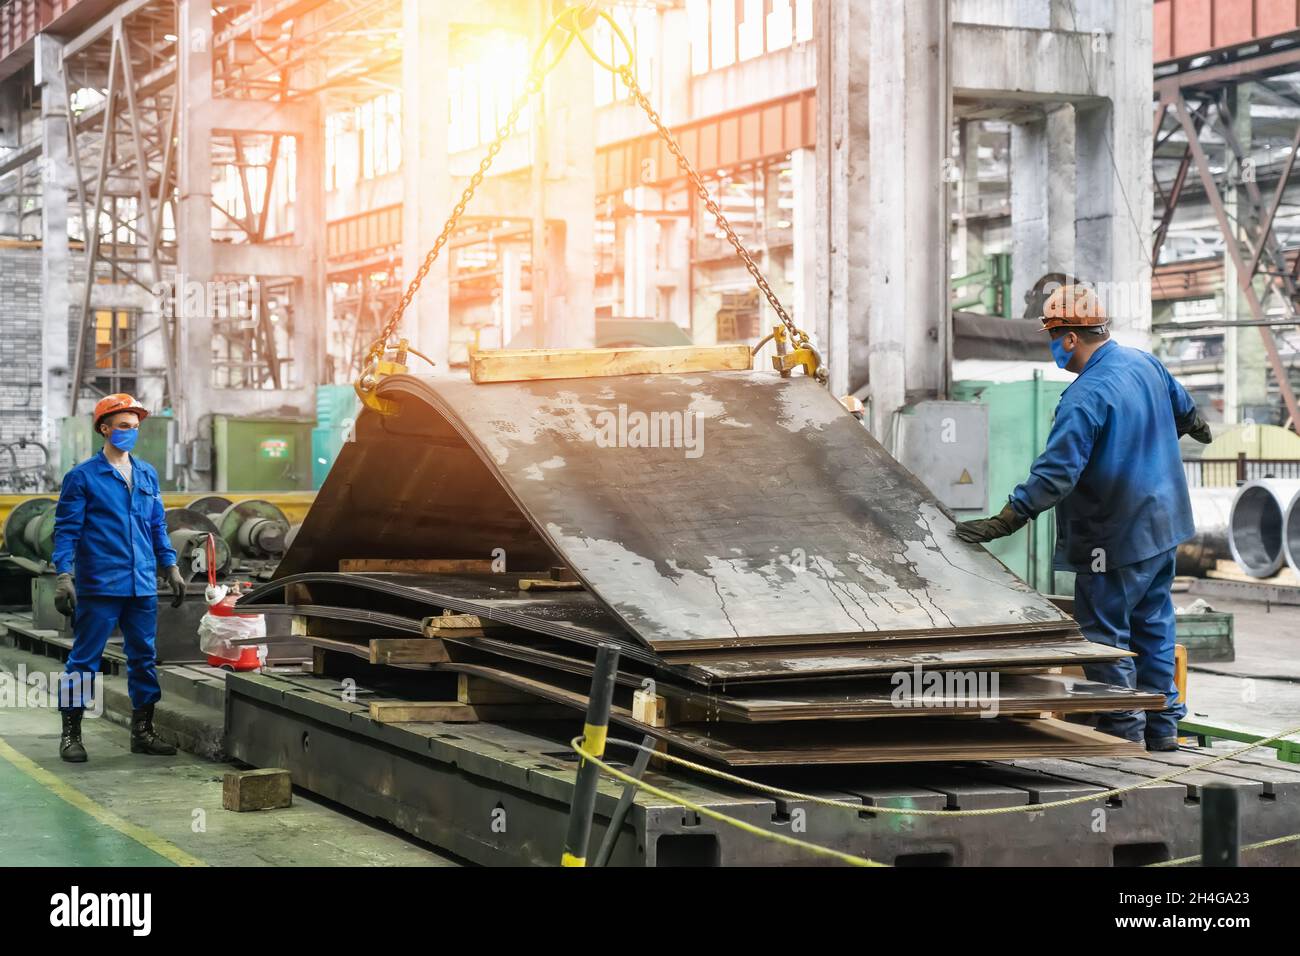 Les travailleurs des masques et casques de l'usine métallurgique déchargent des tôles d'acier ou de métal avec une grue pour la production de la sidérurgie. Banque D'Images